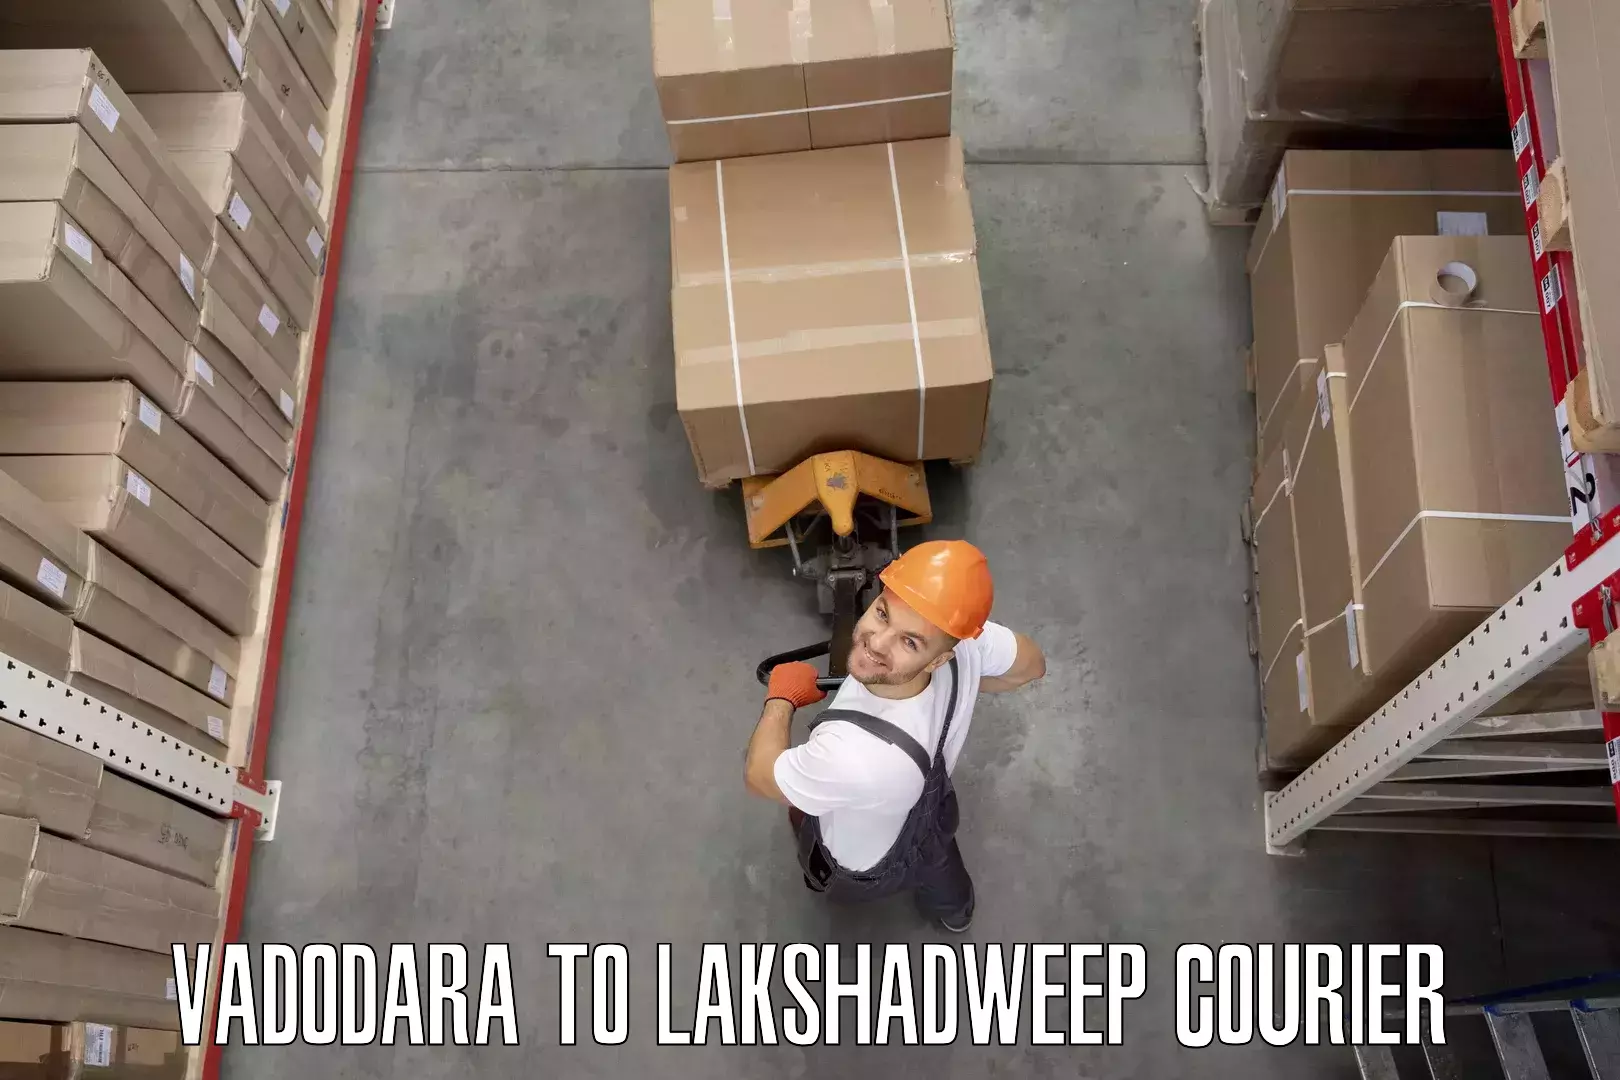 Moving and handling services Vadodara to Lakshadweep